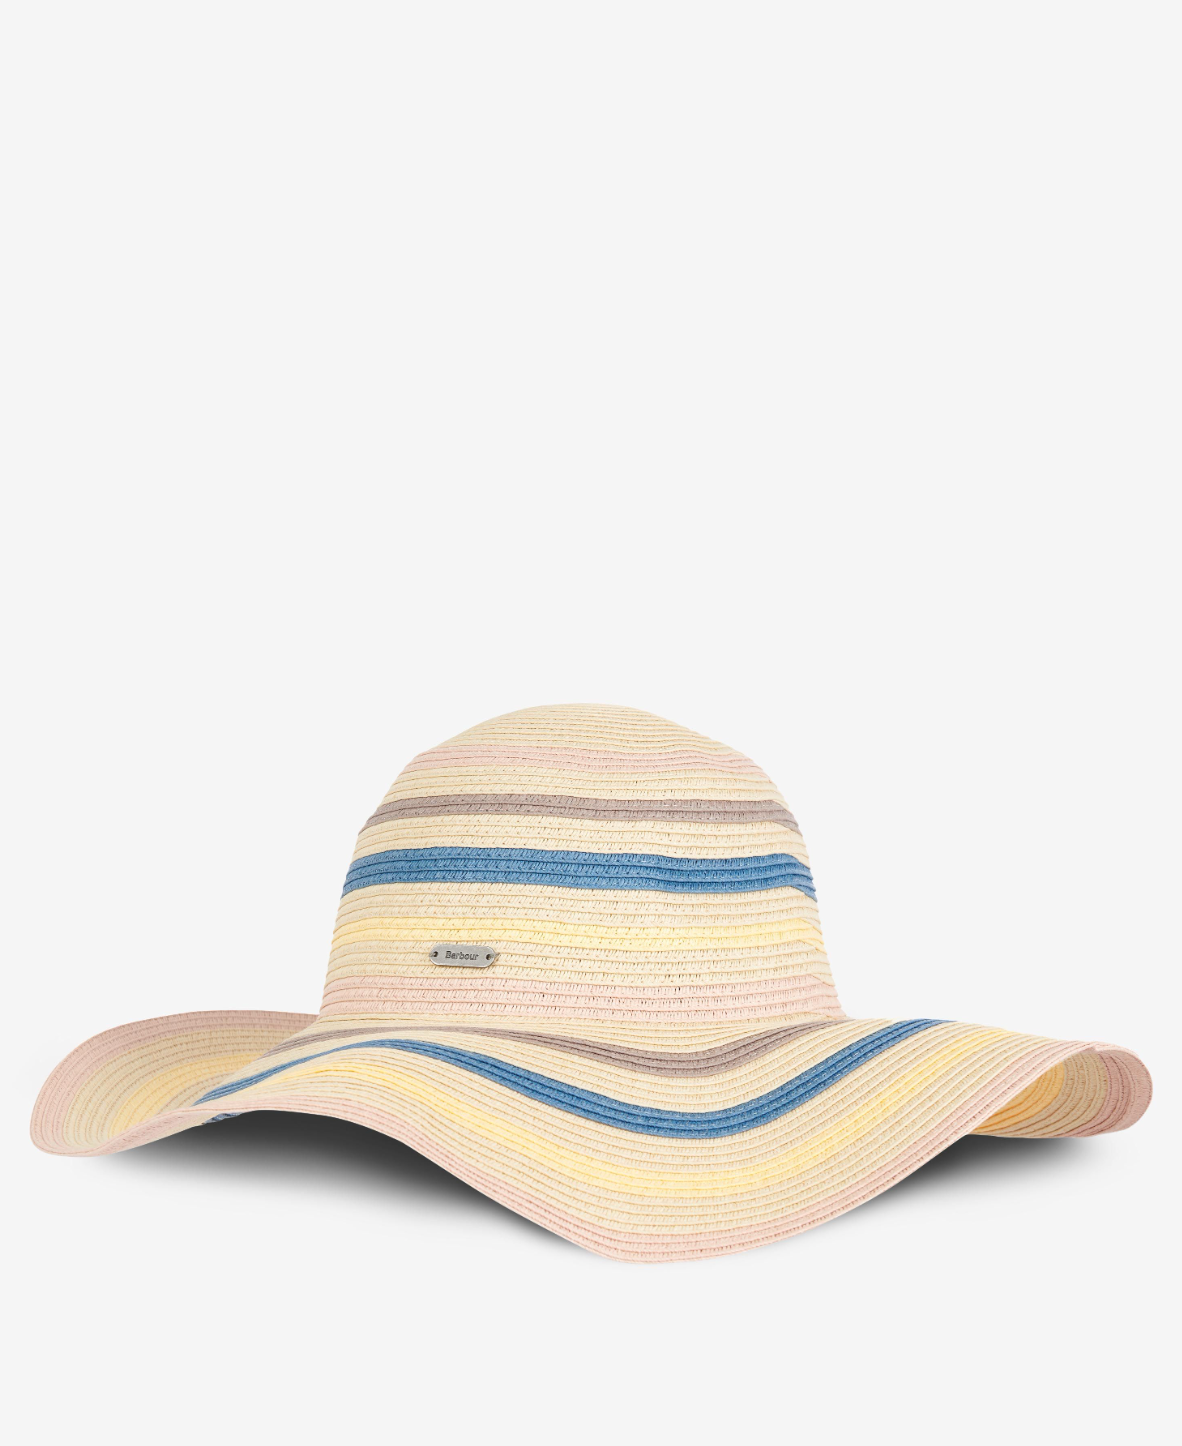 Barbour Women's Astley Sun Hat